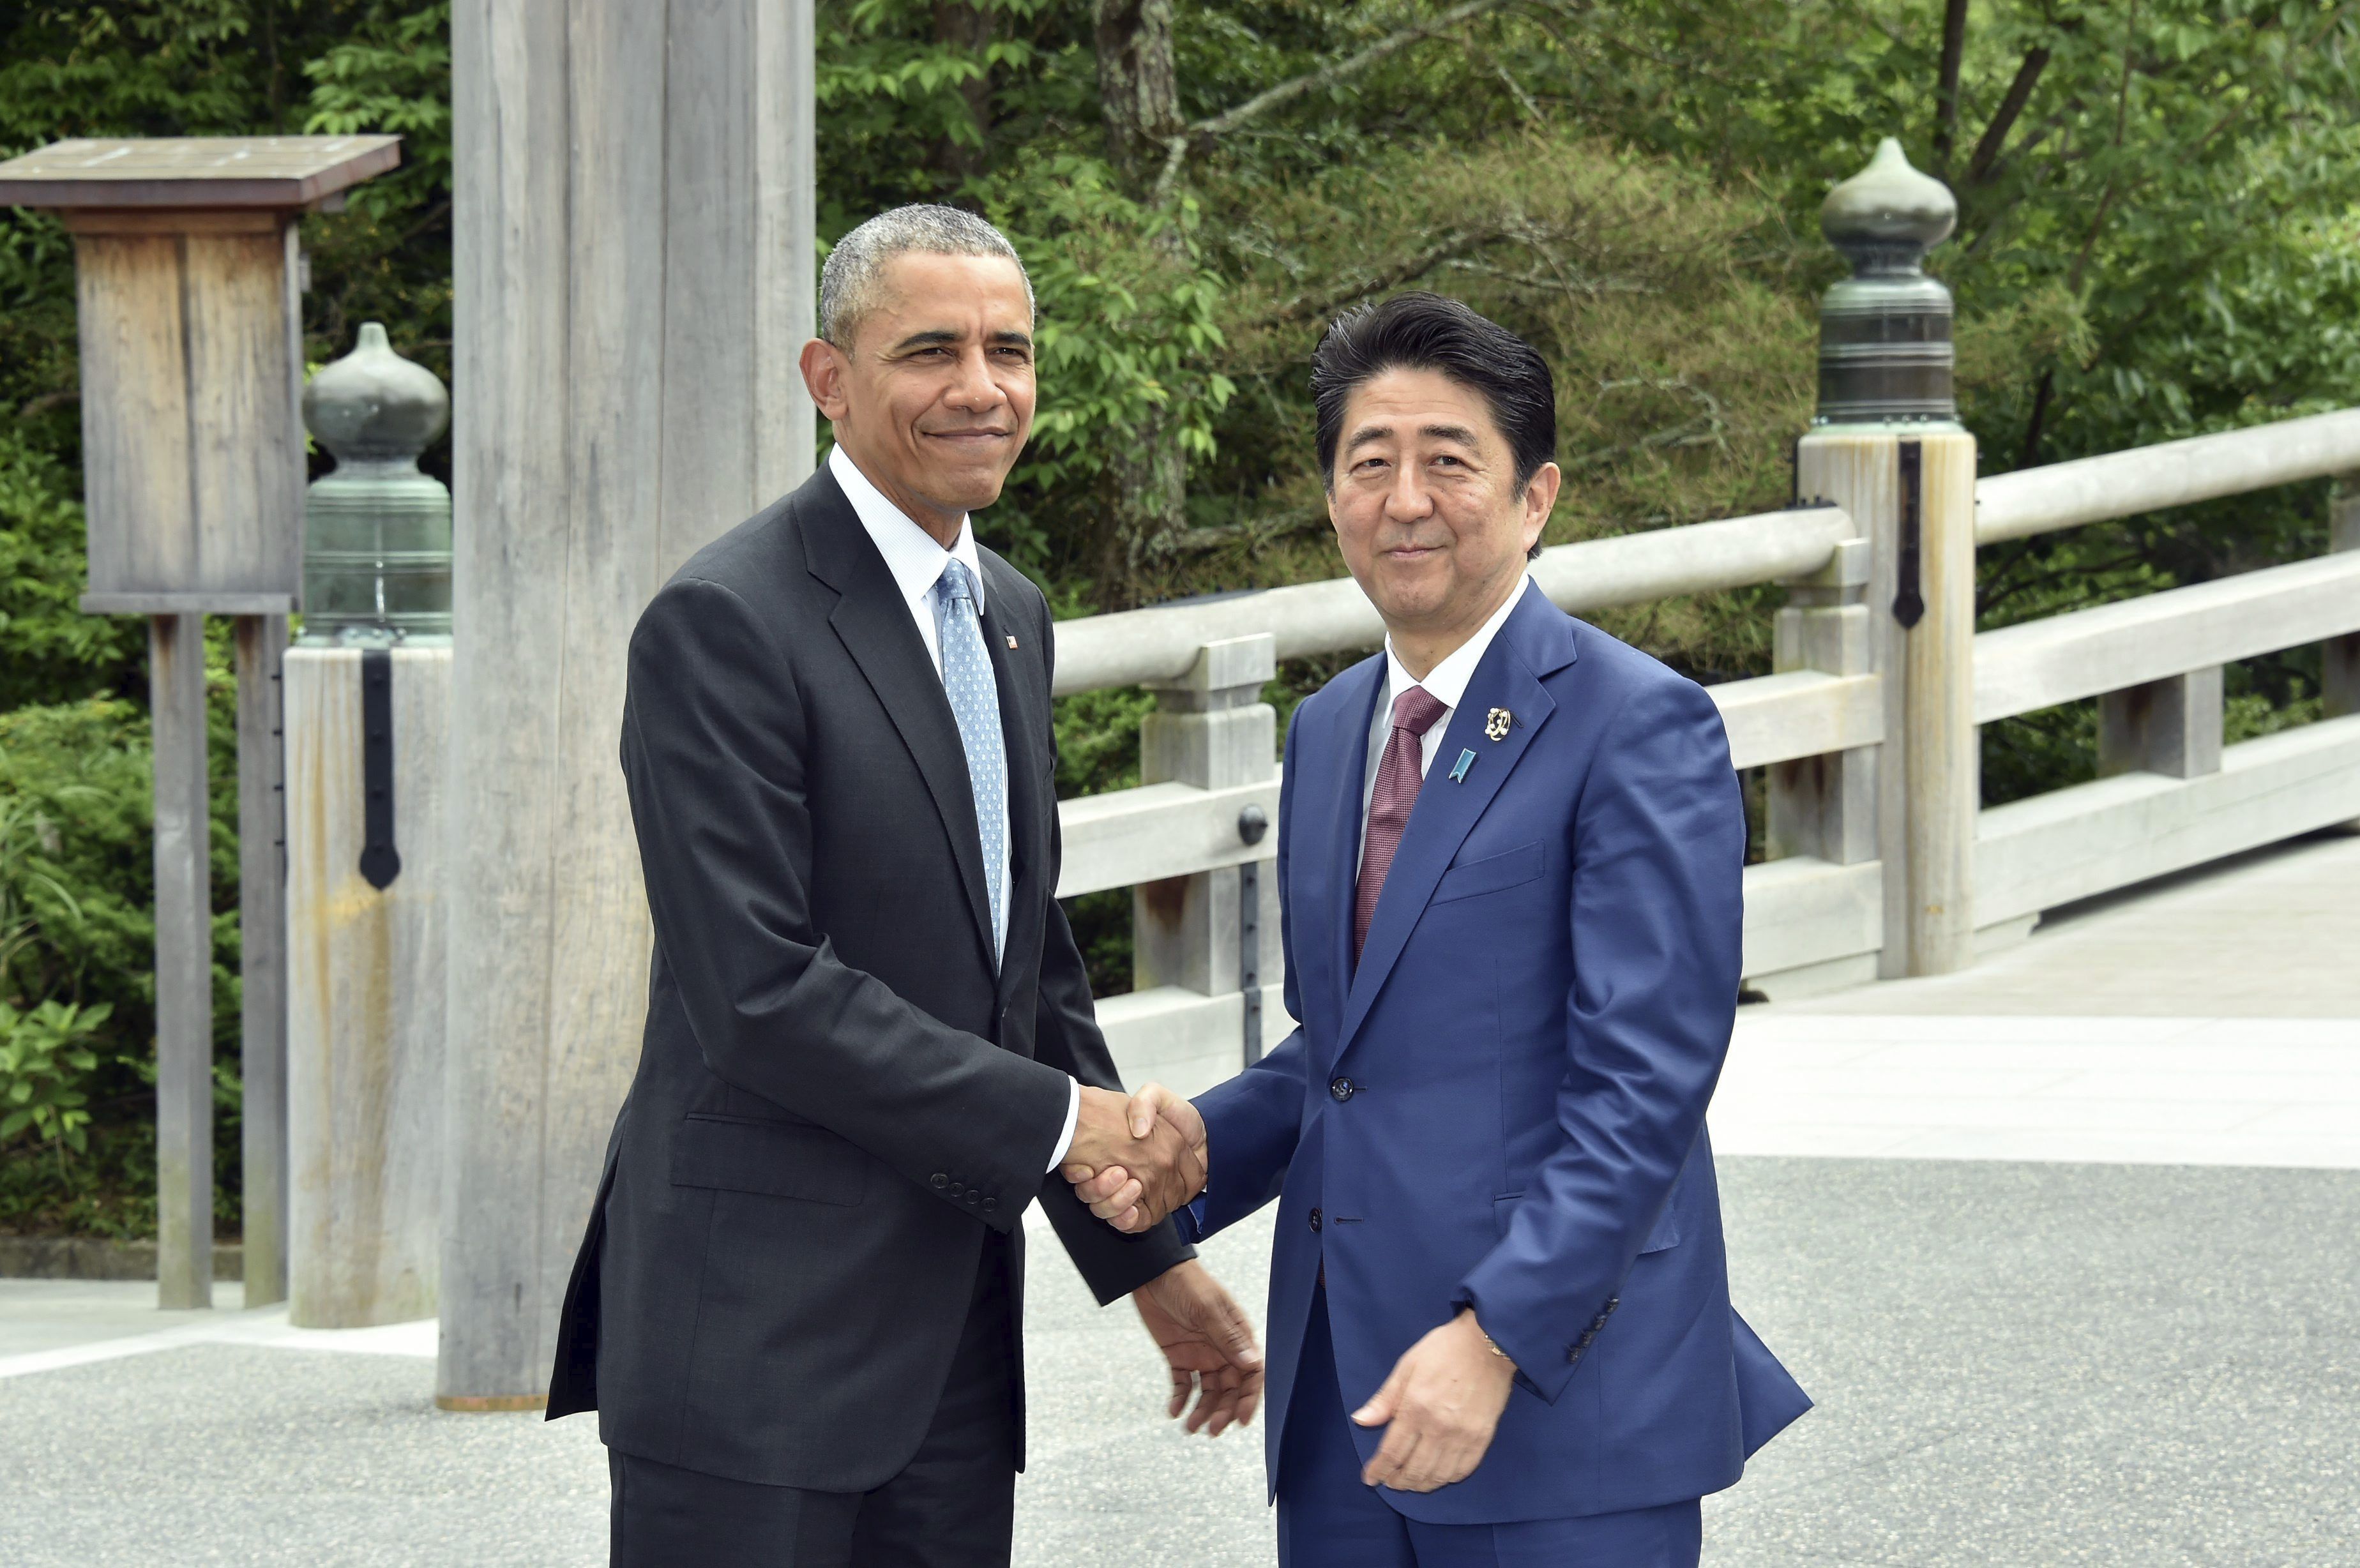 Obama visita Hiroshima 70 anys després de la bomba nuclear